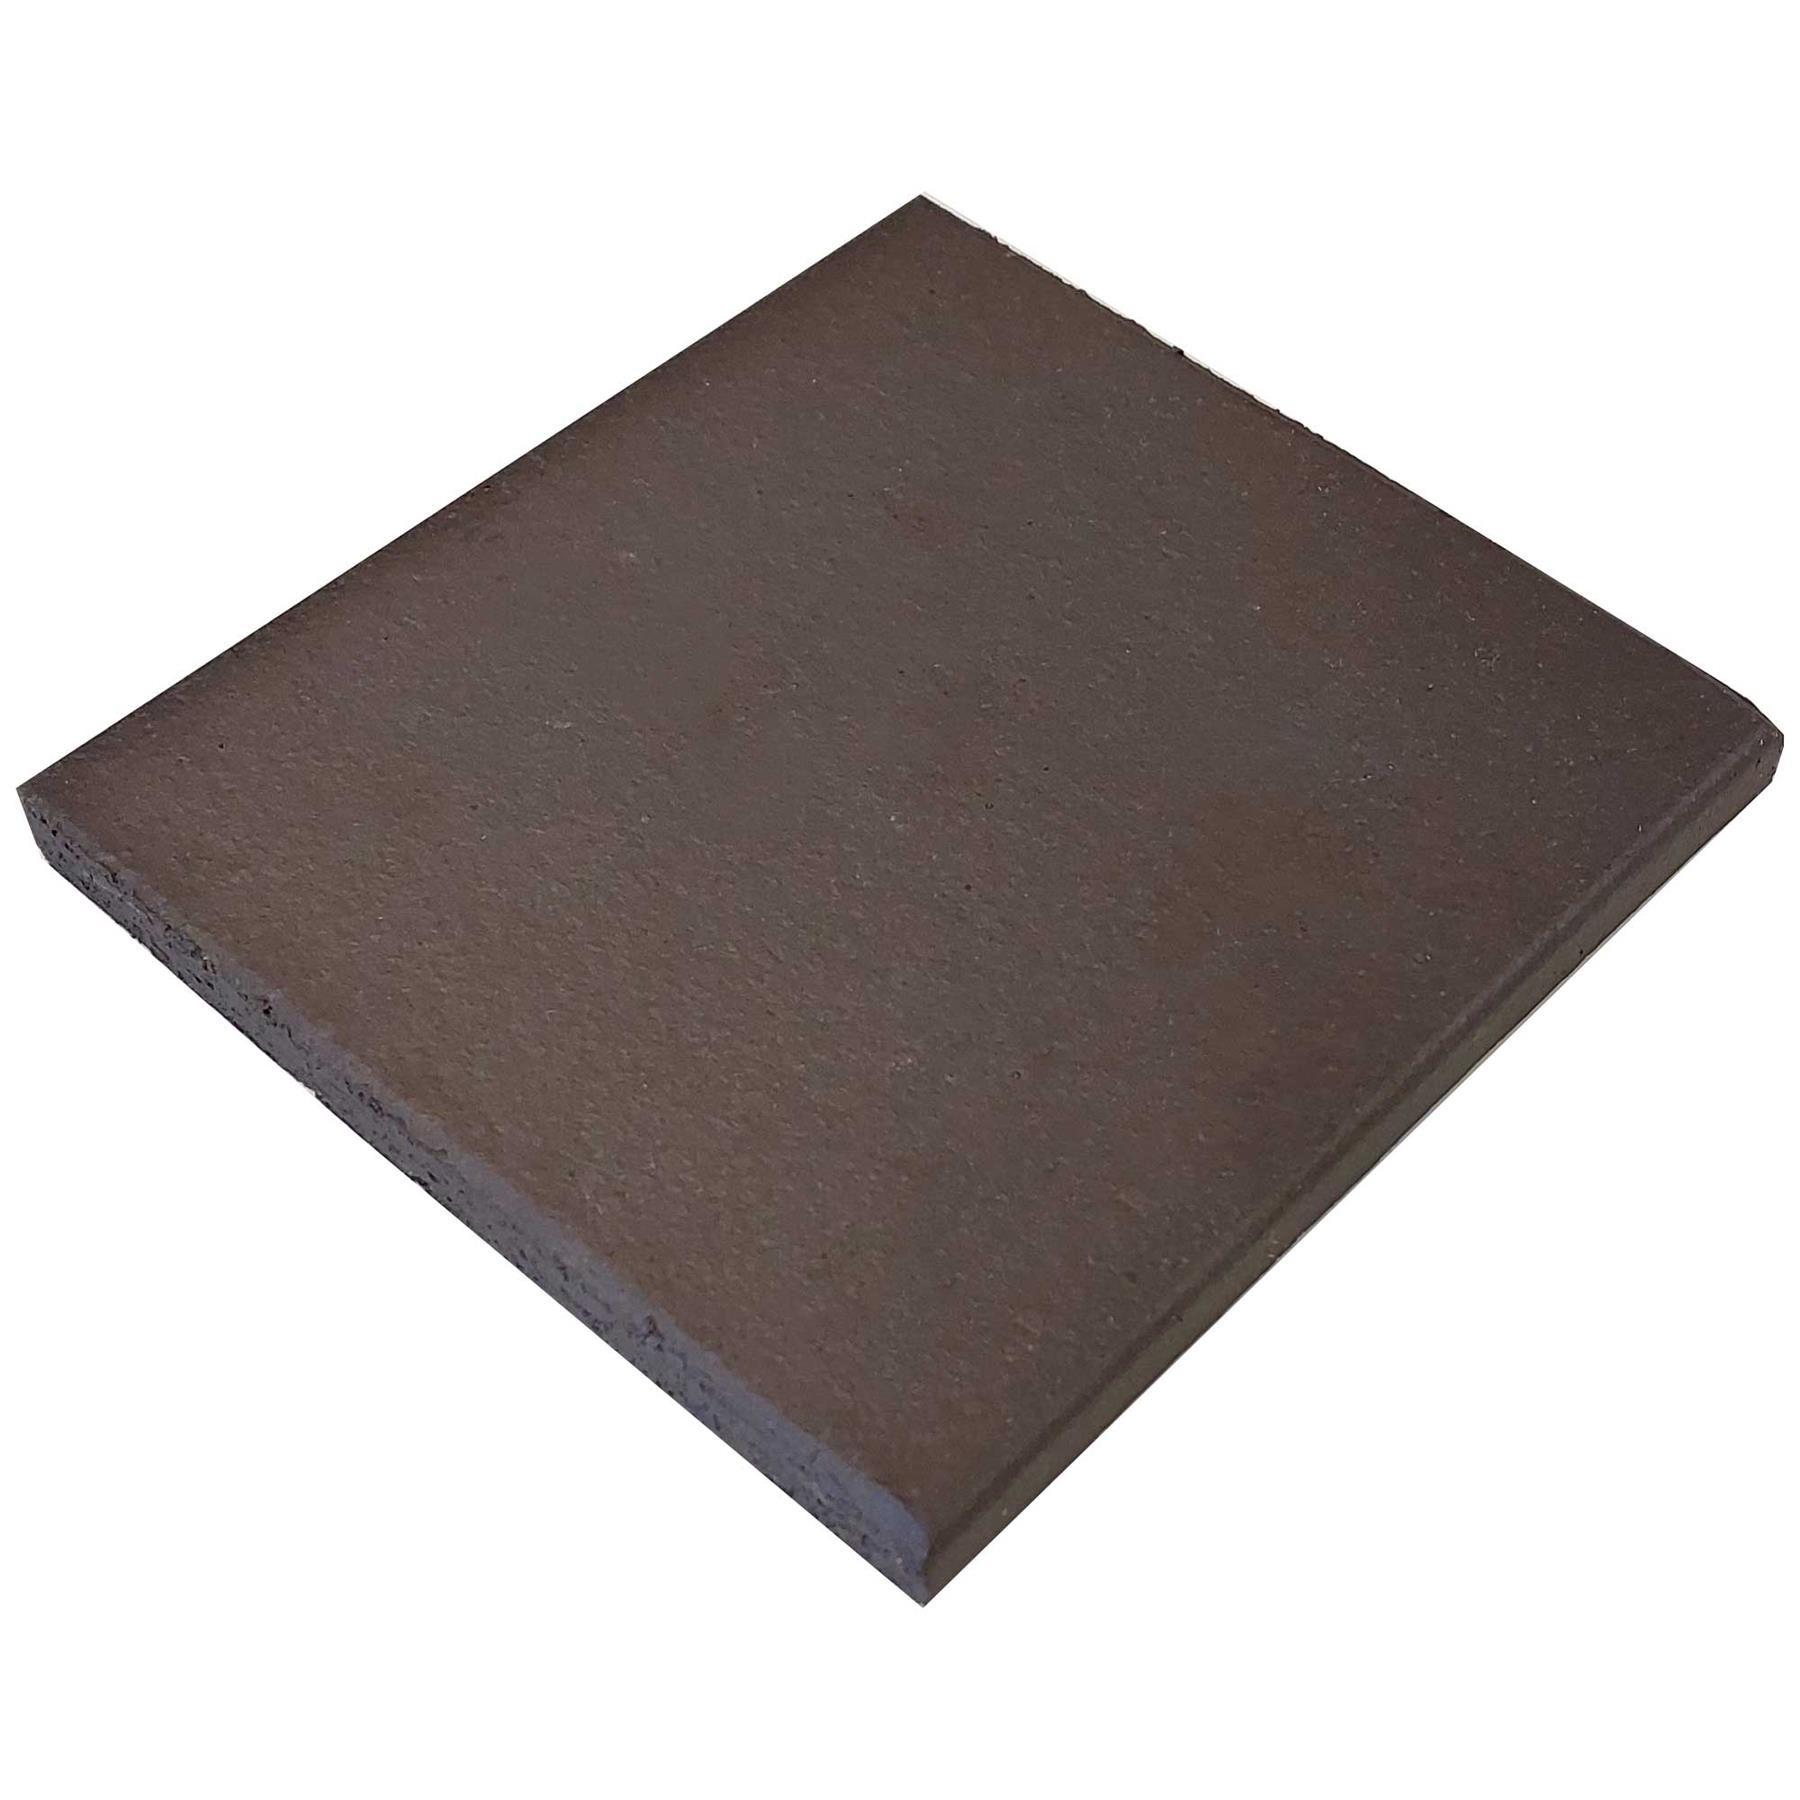 New Authentic Black Brown Quarry Tiles Plain 150x150mm